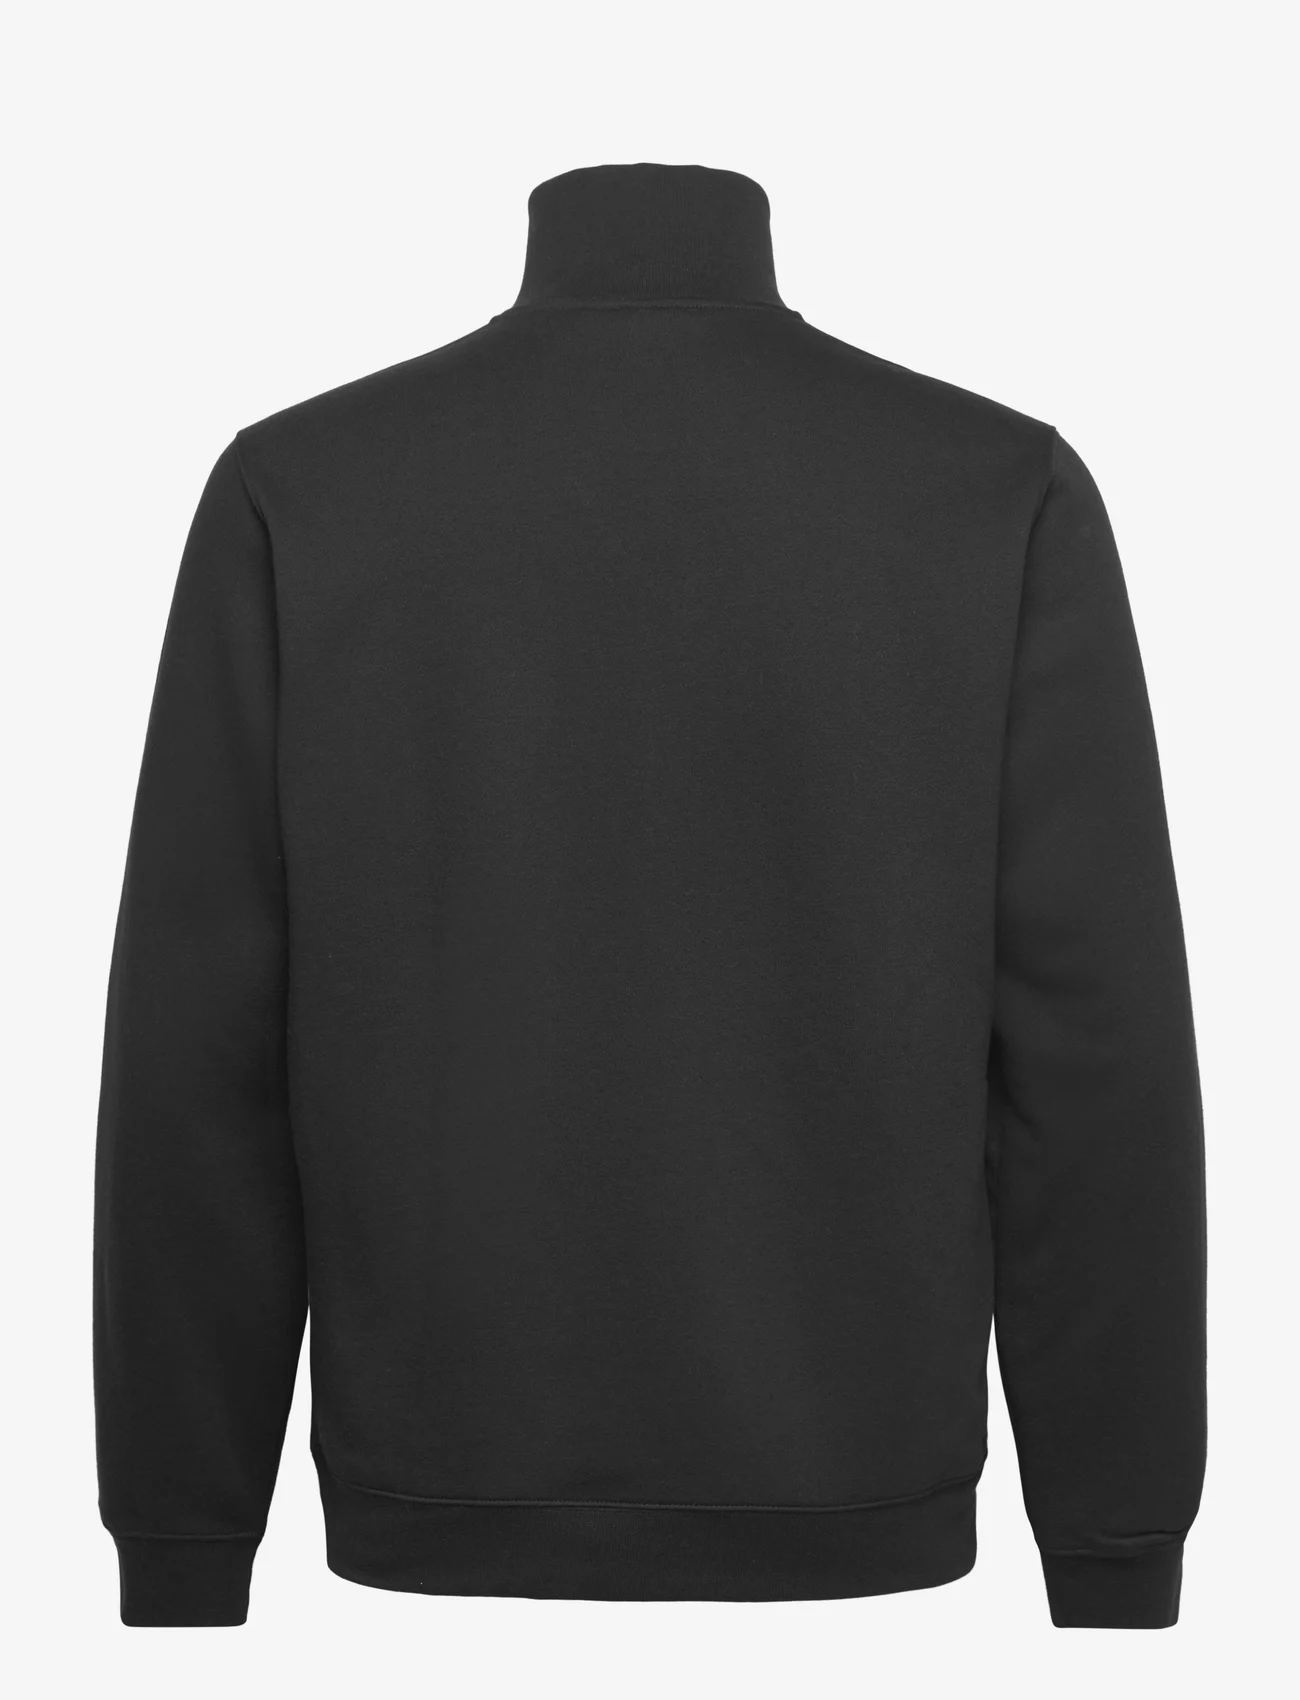 adidas Originals - 3-STRIPE HZ CRW - hoodies - black/white - 1